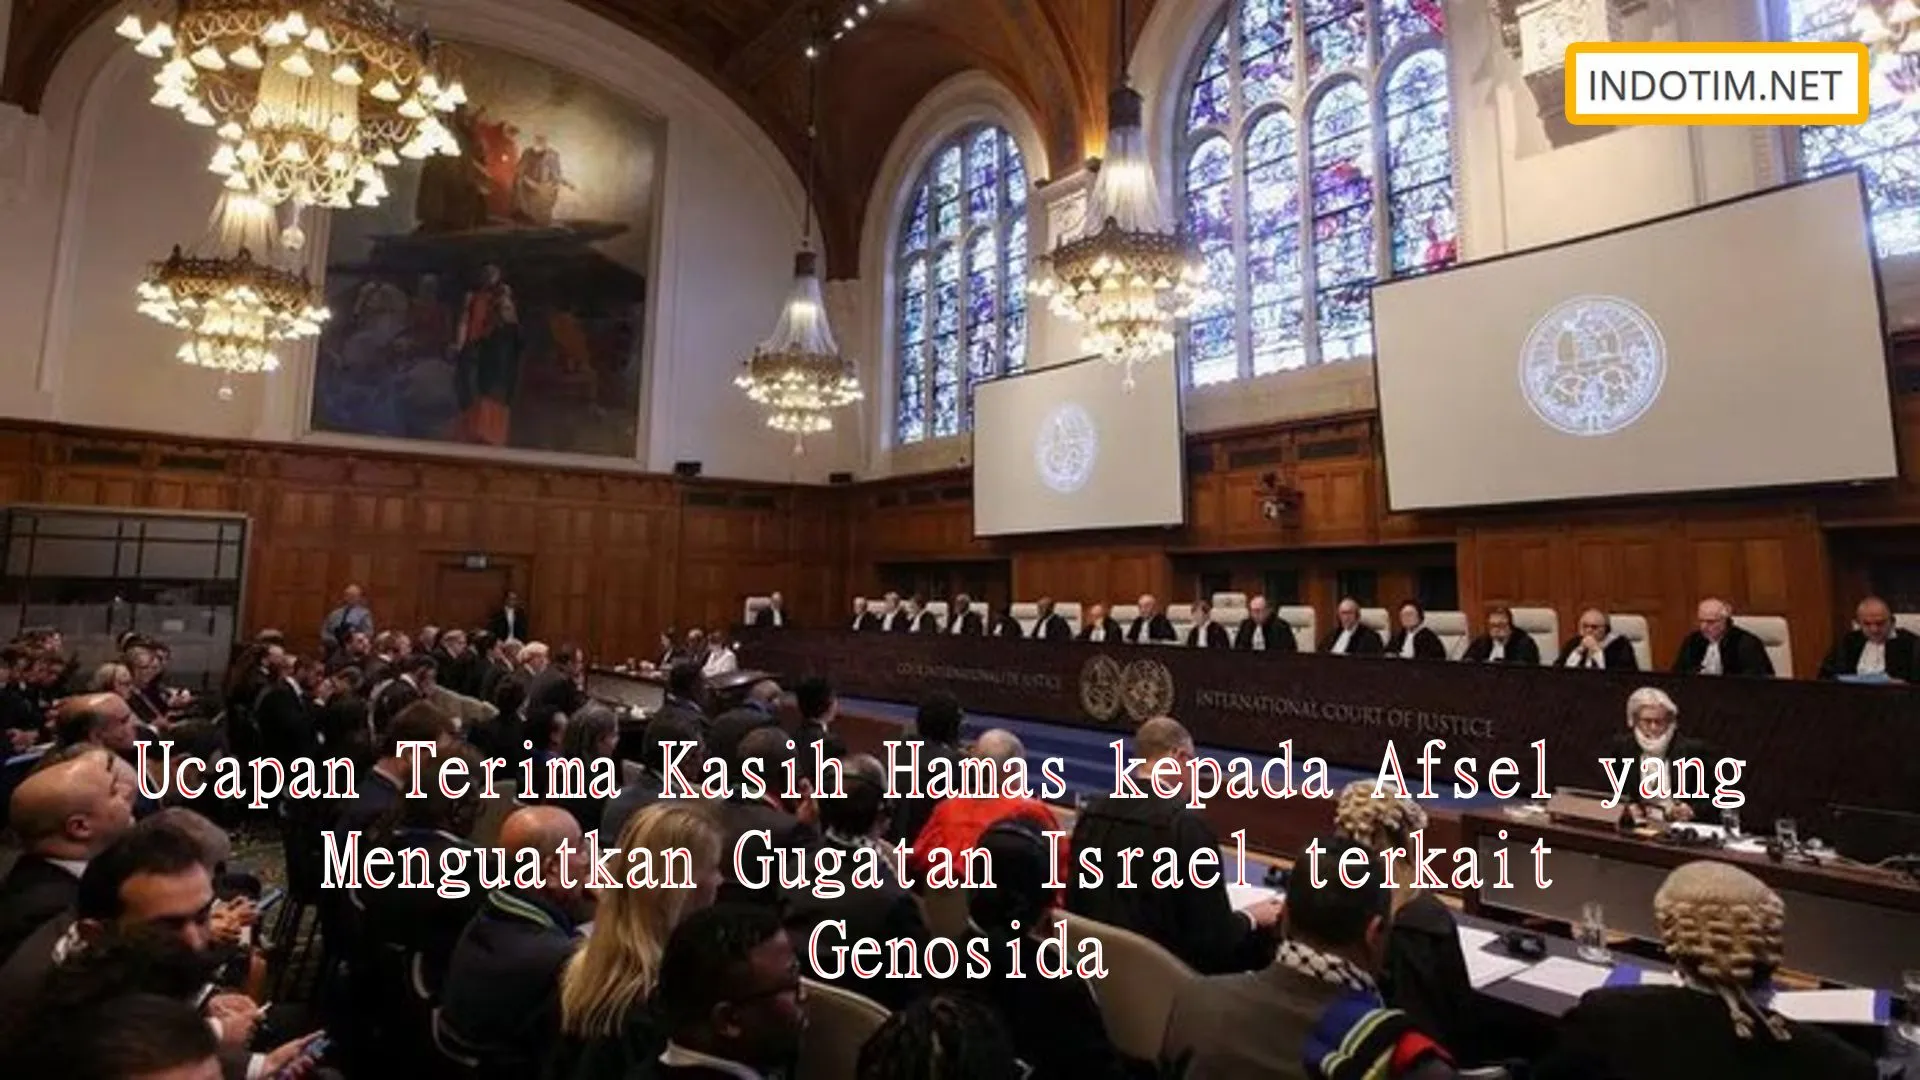 Ucapan Terima Kasih Hamas kepada Afsel yang Menguatkan Gugatan Israel terkait Genosida